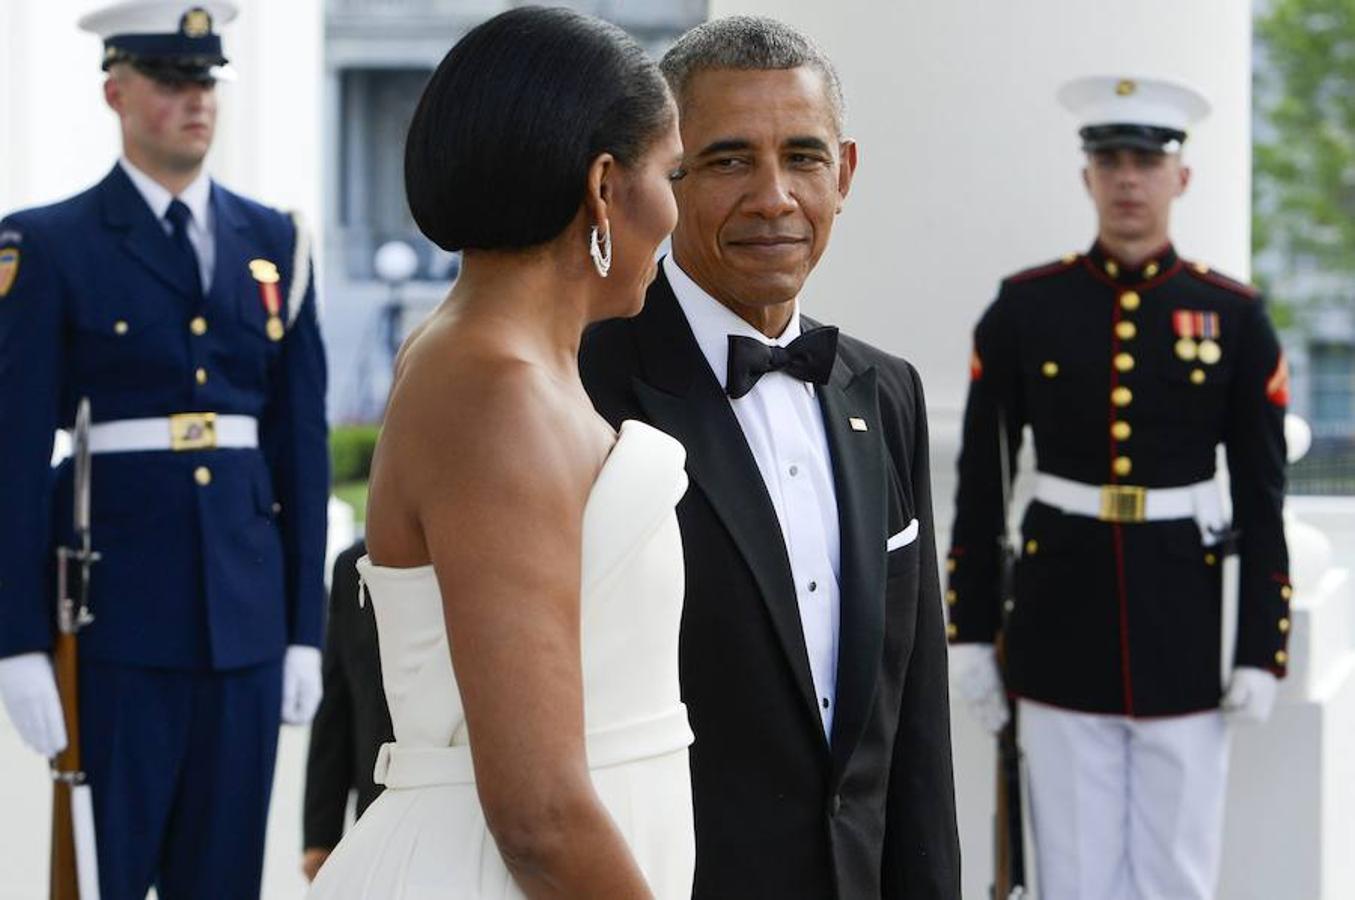 Michelle Obama lució un espectacular vestido largo blanco, con escote y doble capa trasera en forma de cola